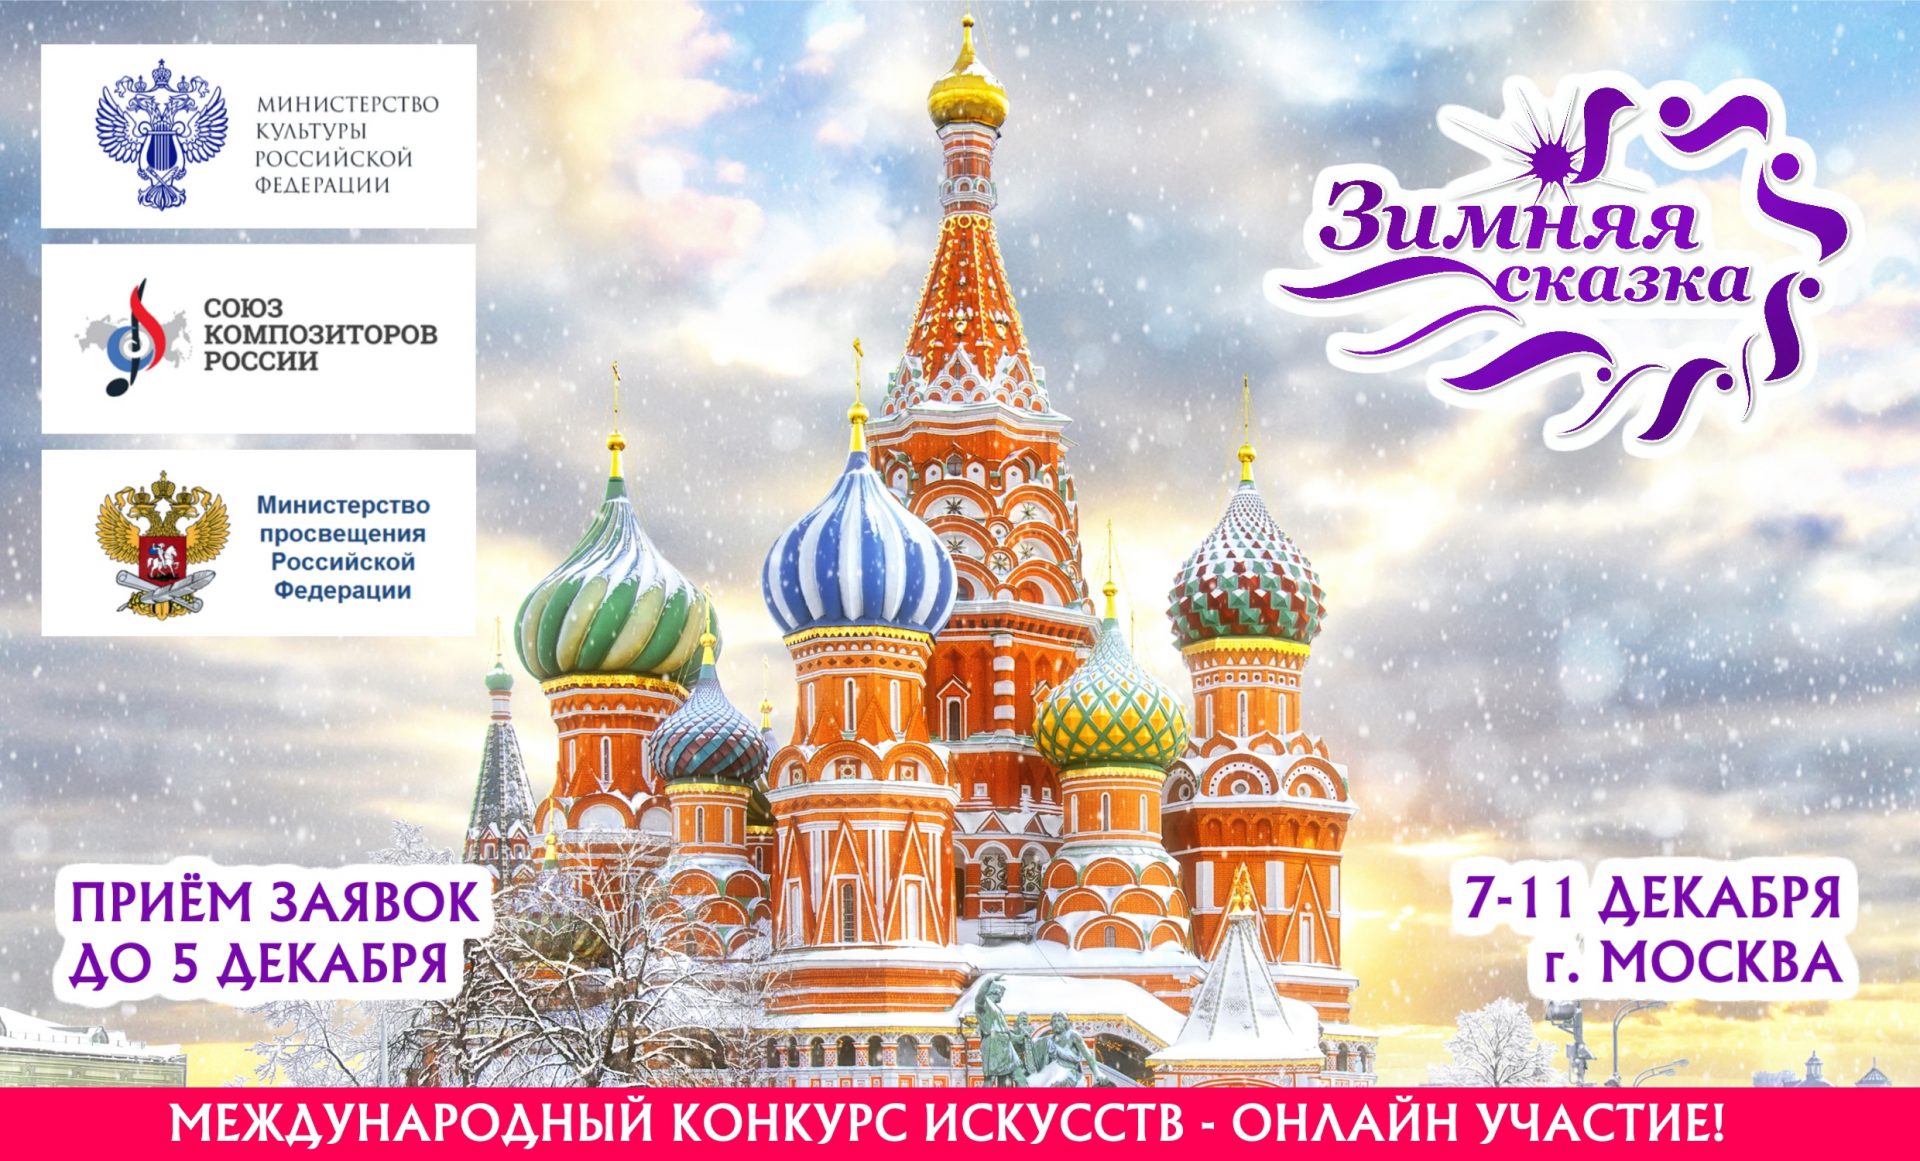 Какой праздник 4 апреля в россии. Приглашаем к участию. Приглашение в Россию зимой картинки. Праздник 4 ноября 2022 православный картинки. Праздники в ноябре картинки для детей.